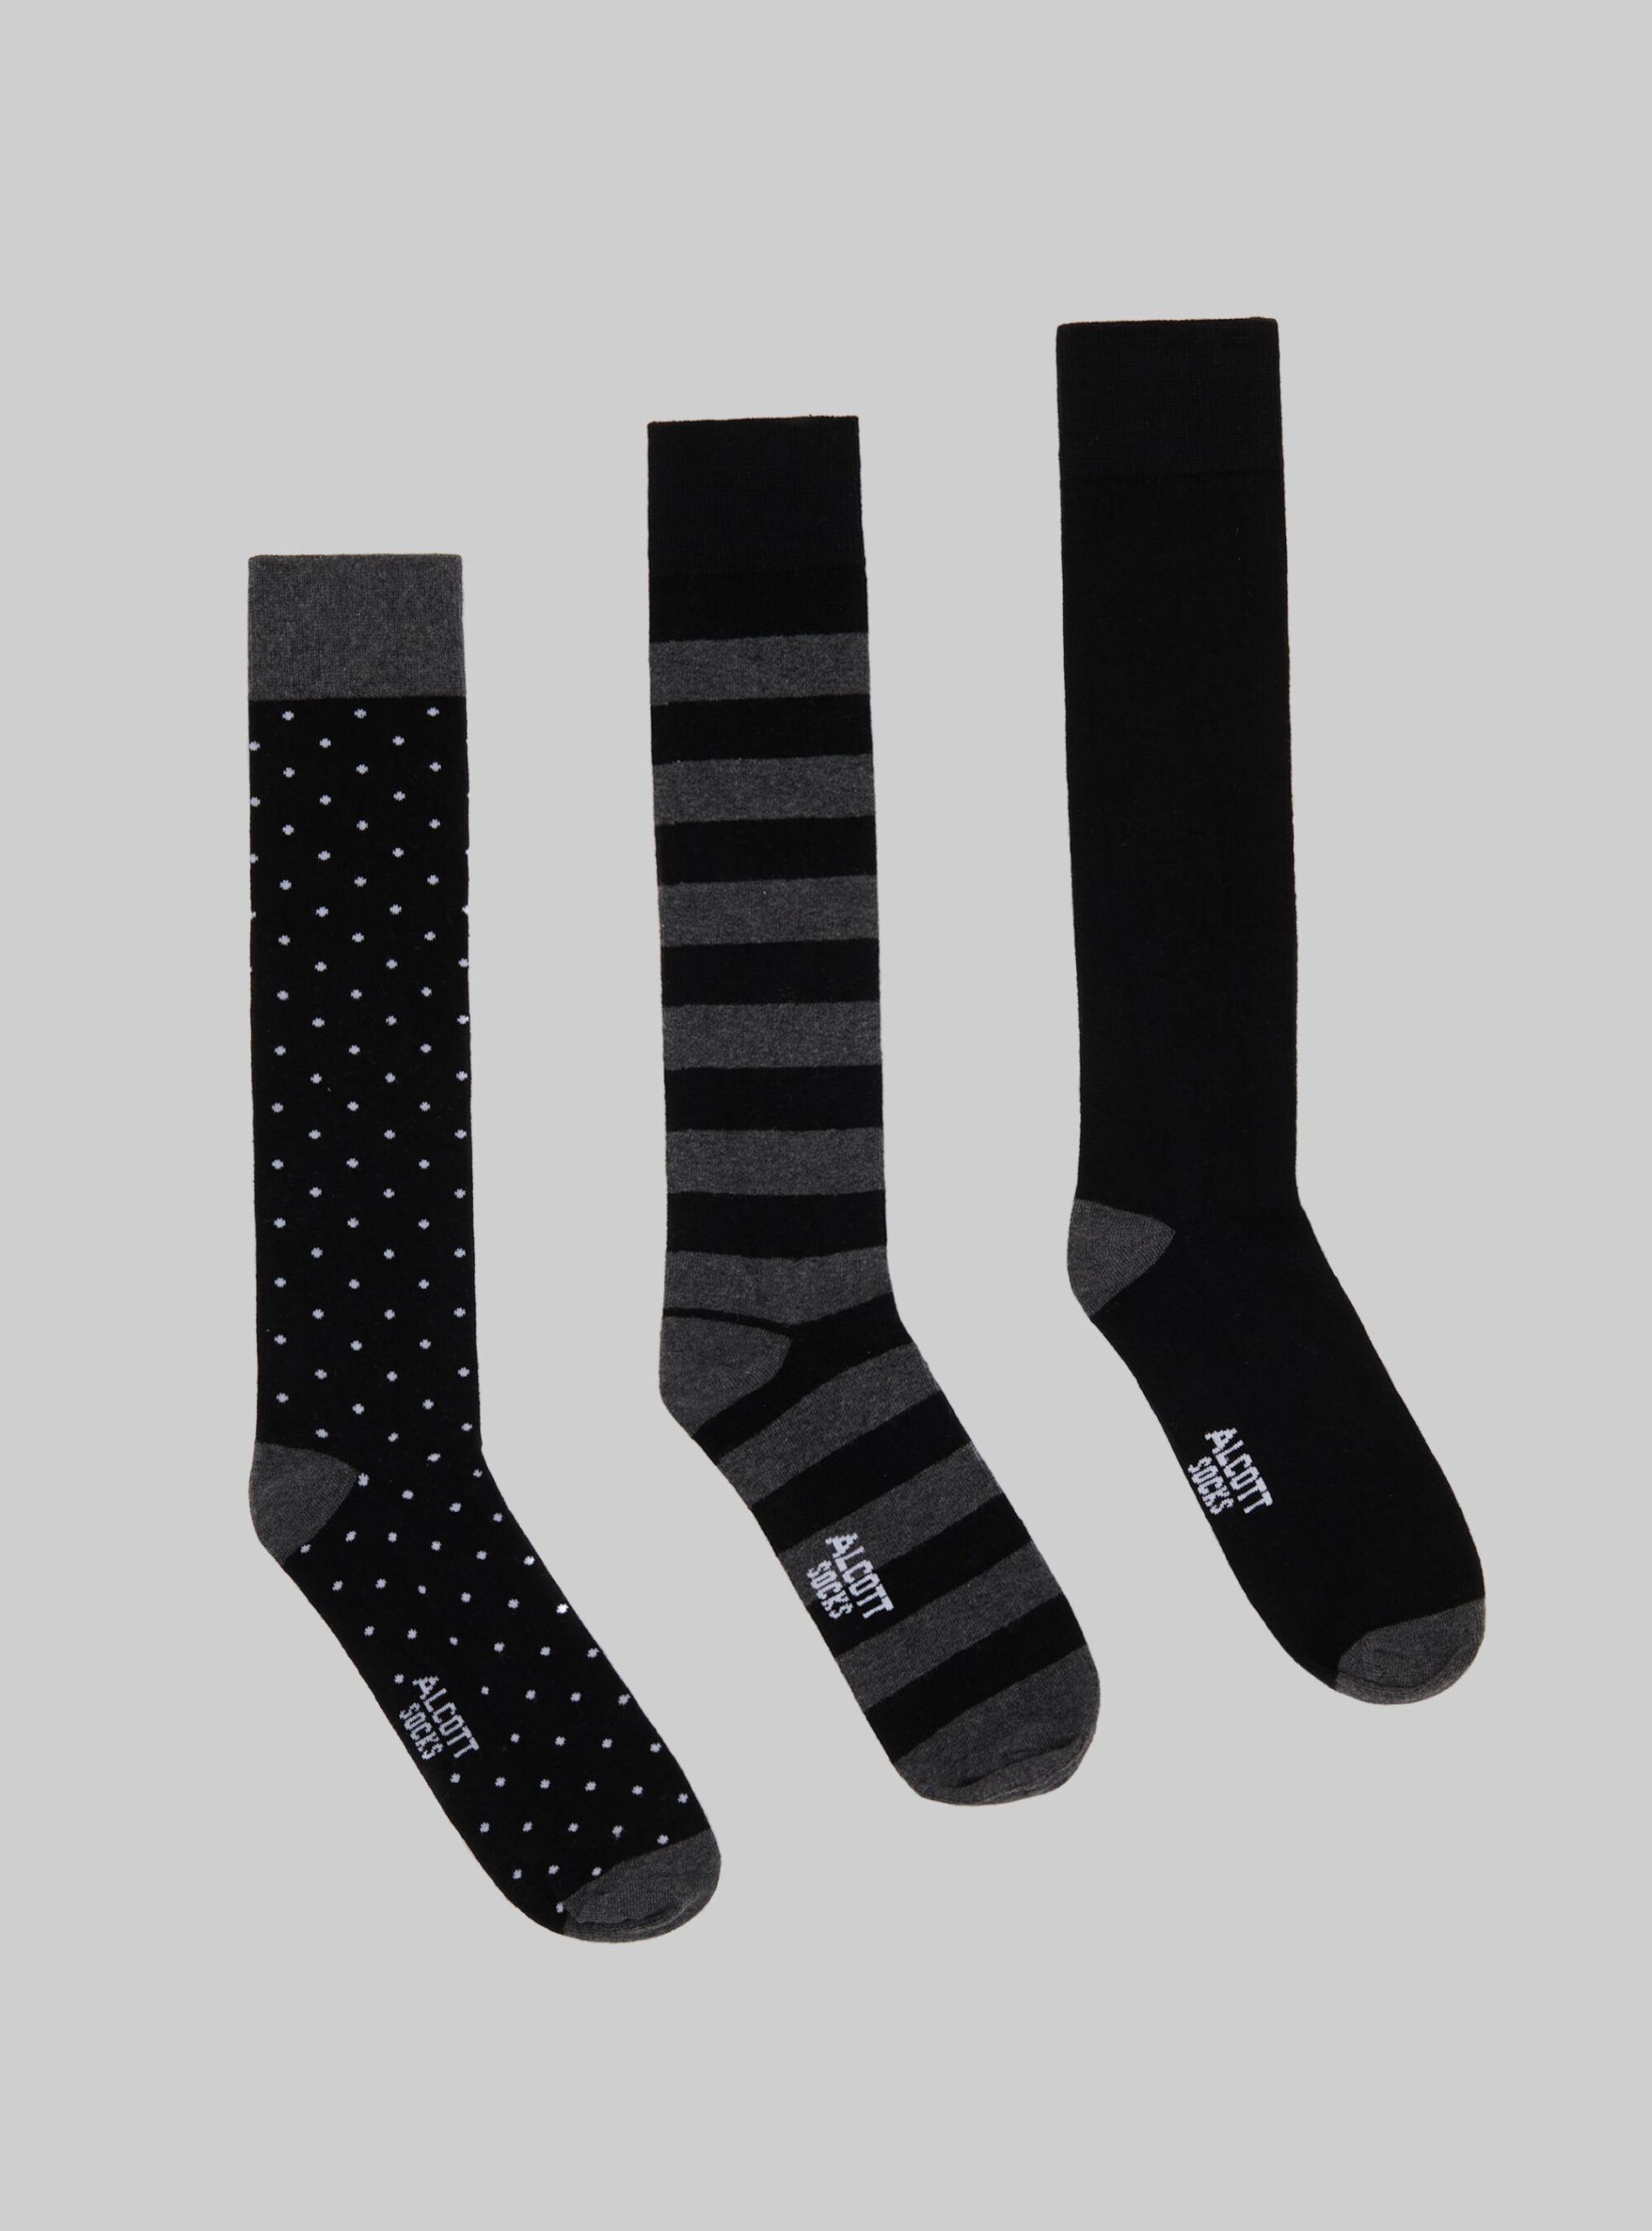 Mgy1 Grey Mel Dark Socken Alcott Satz Von 3 Paar Gemusterten Socken Männer Verkauf – 1